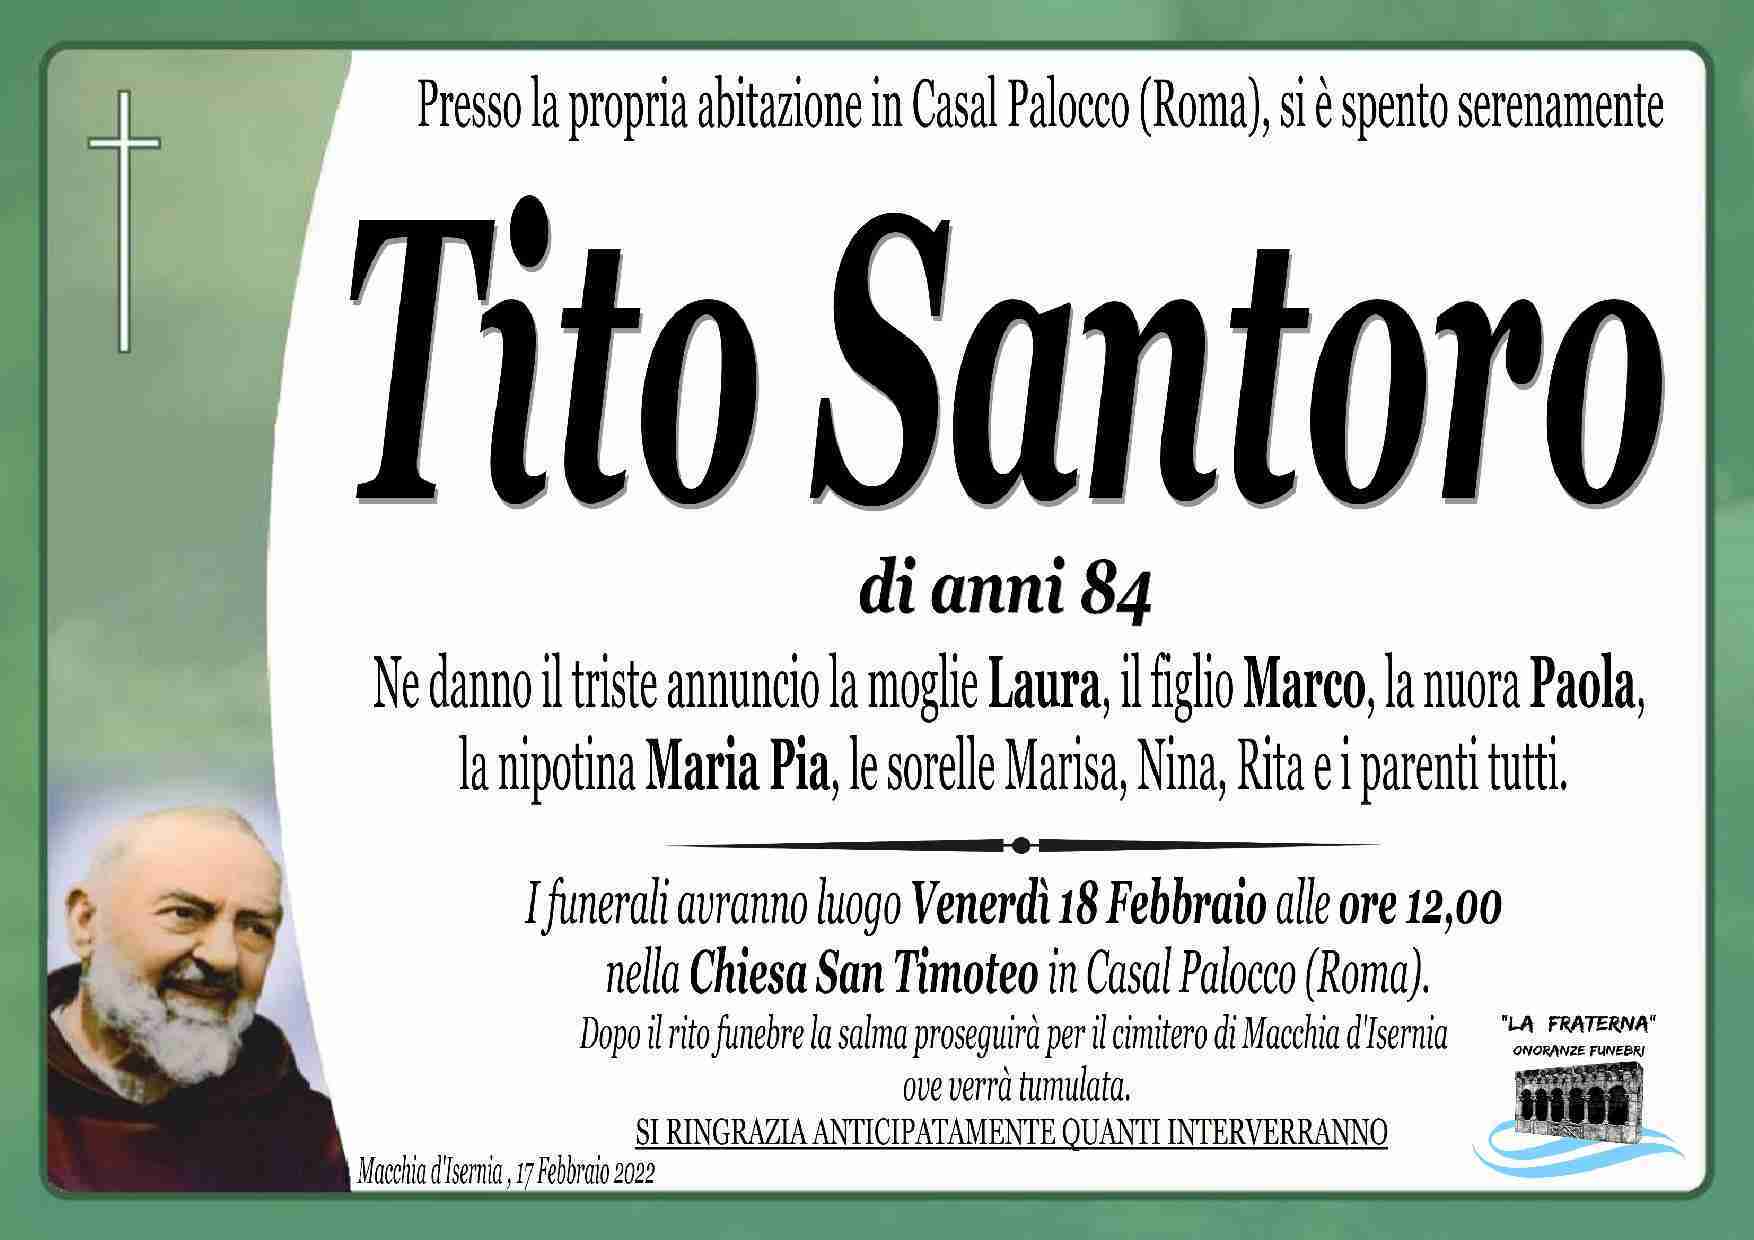 Tito Santoro